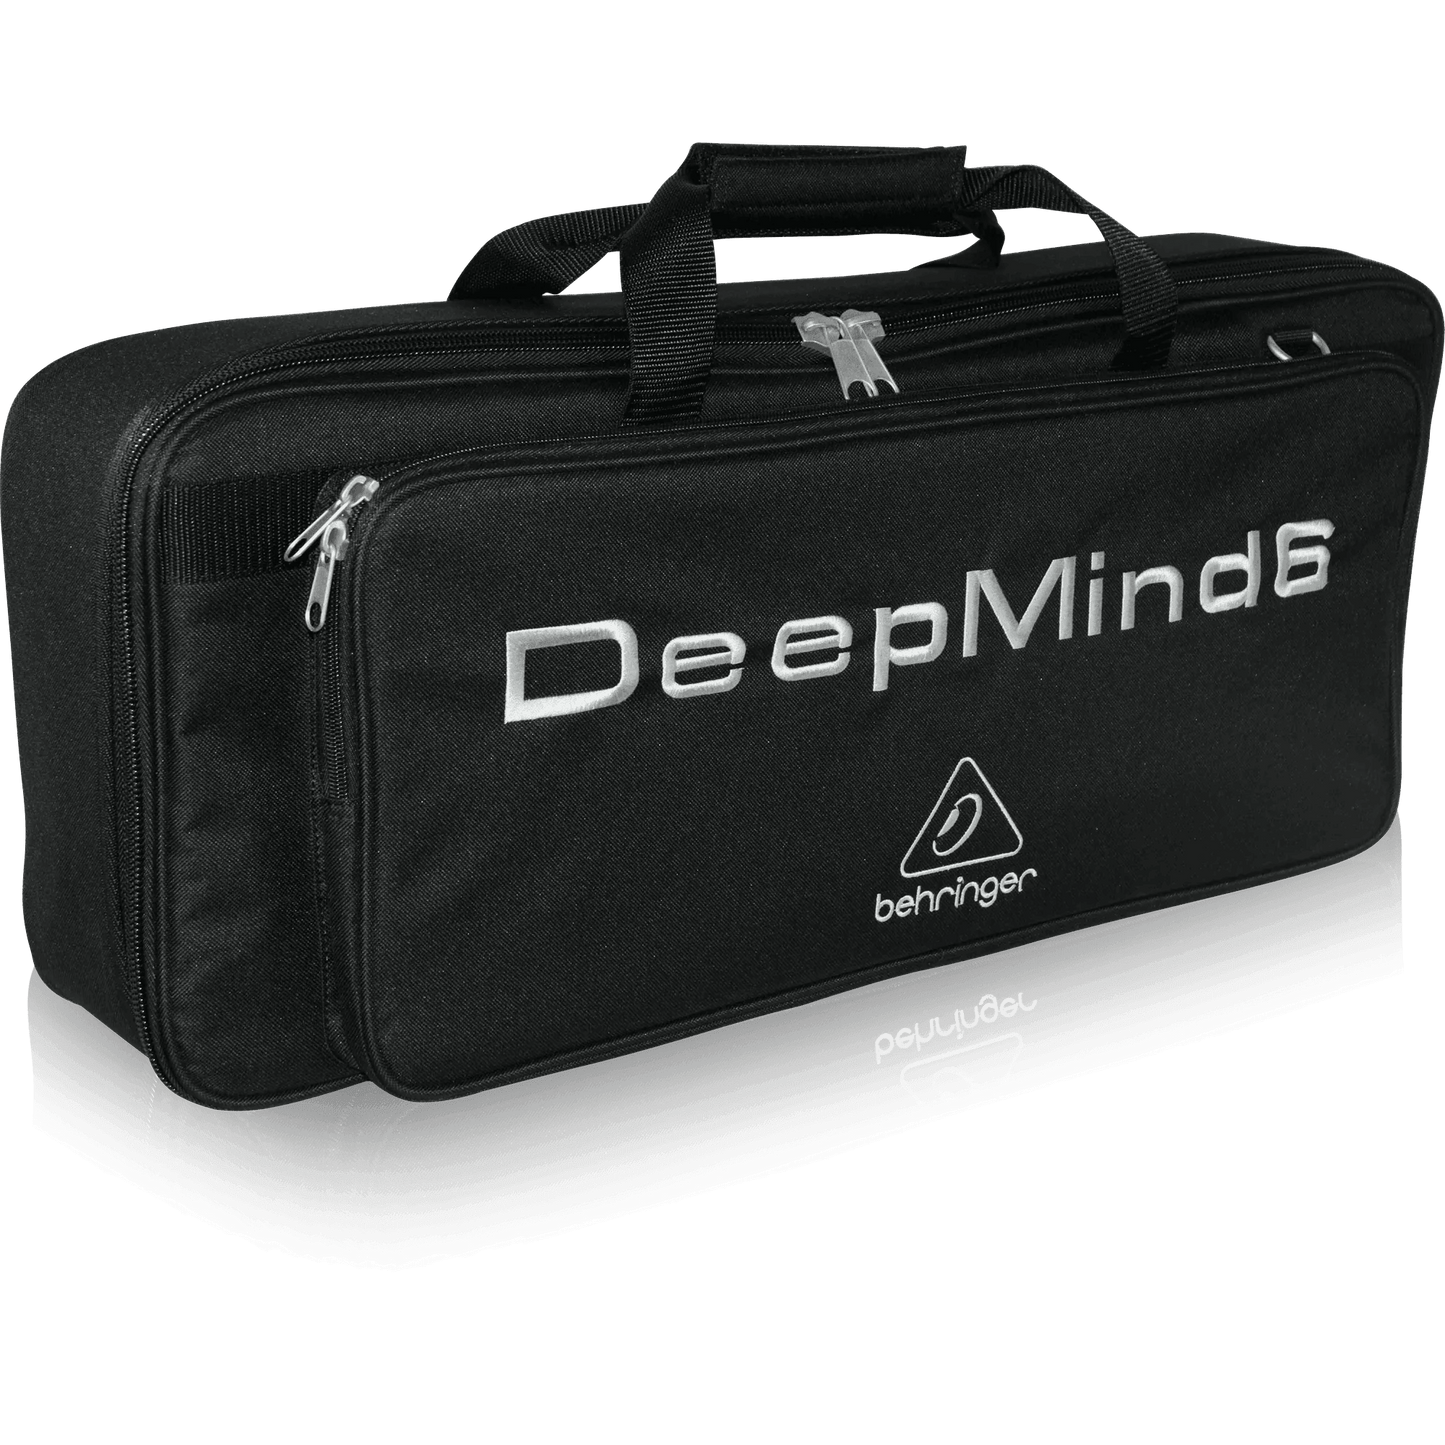 Behringer DEEPMIND 6-TB Deluxe Water Resistant Transport Bag for DEEPMIND 6